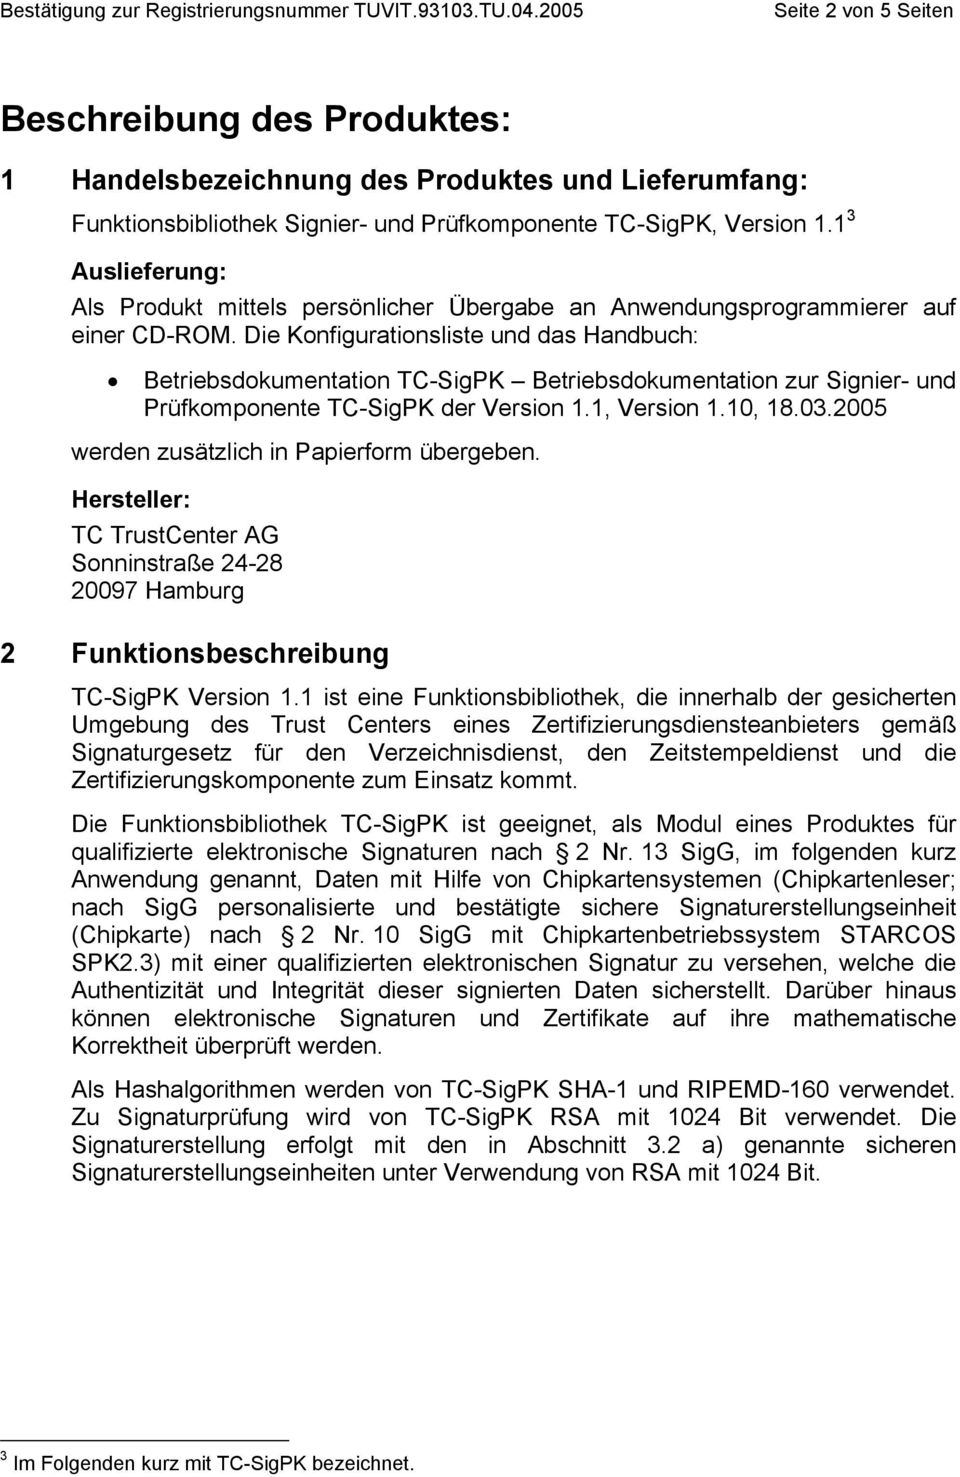 Die Konfigurationsliste und das Handbuch: Betriebsdokumentation TC-SigPK Betriebsdokumentation zur Signier- und Prüfkomponente TC-SigPK der Version 1.1, Version 1.10, 18.03.